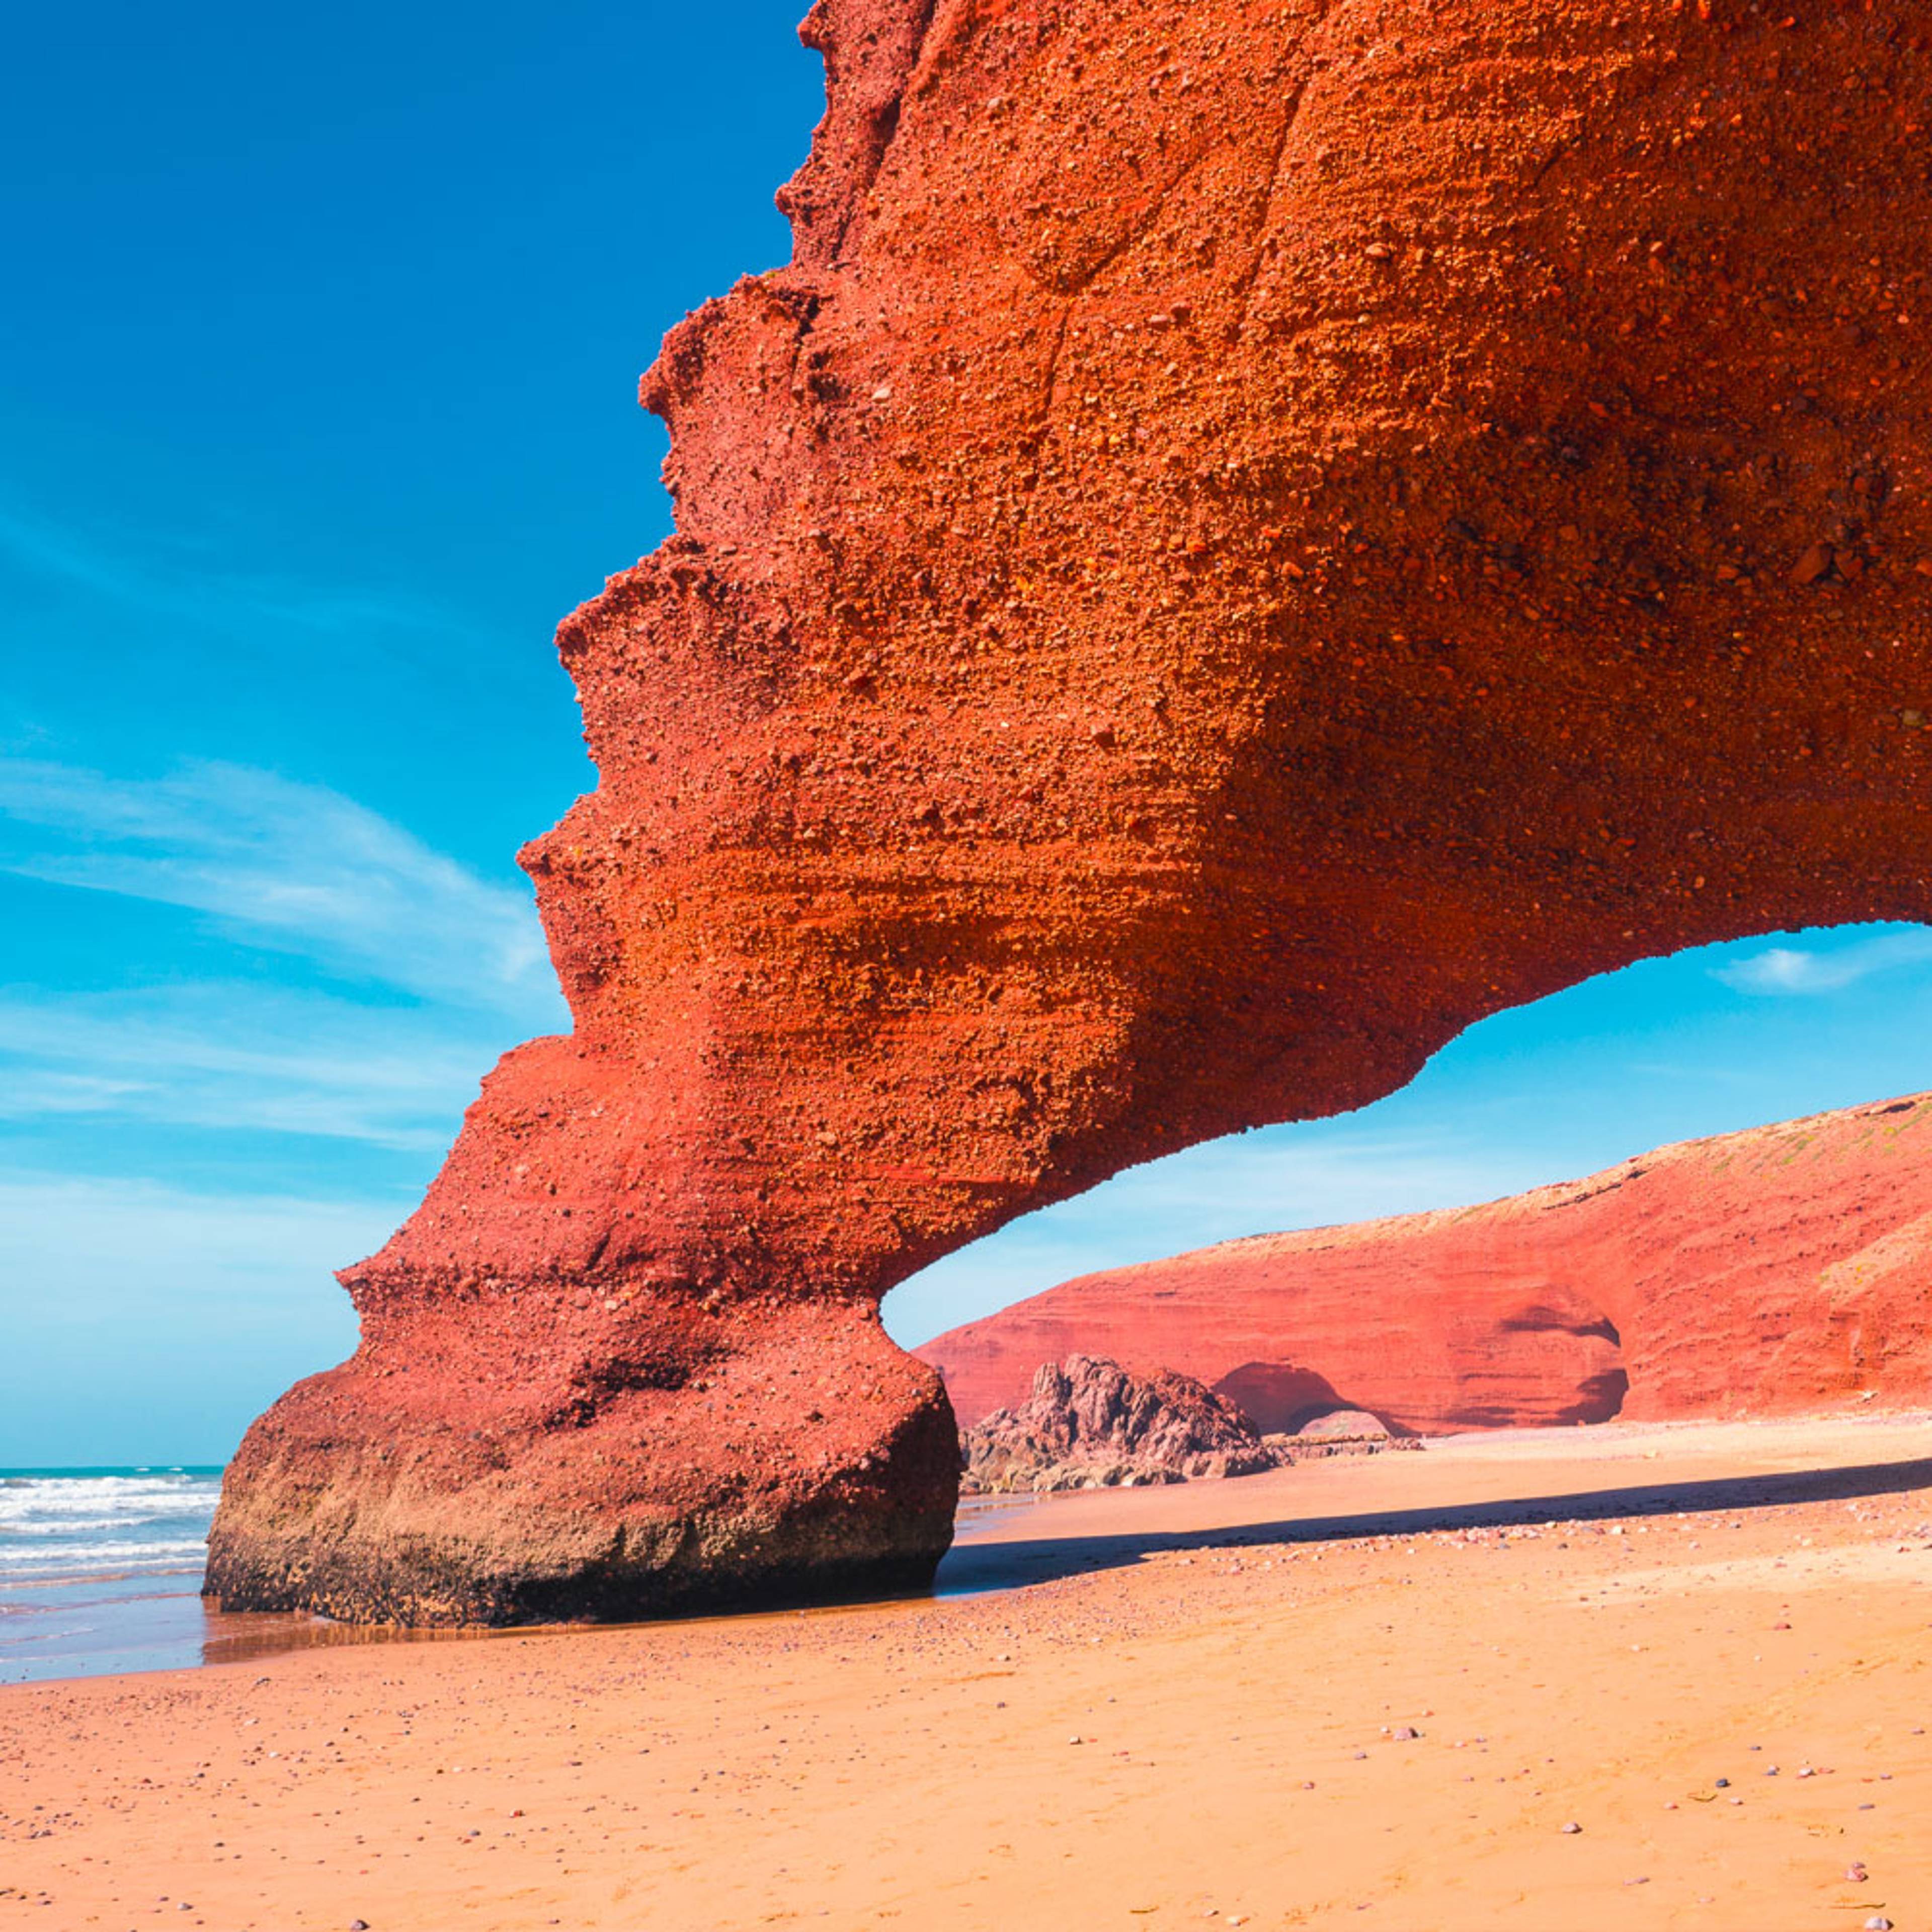 Découvrez les plus belles plages lors de votre voyage au Maroc 100% sur mesure